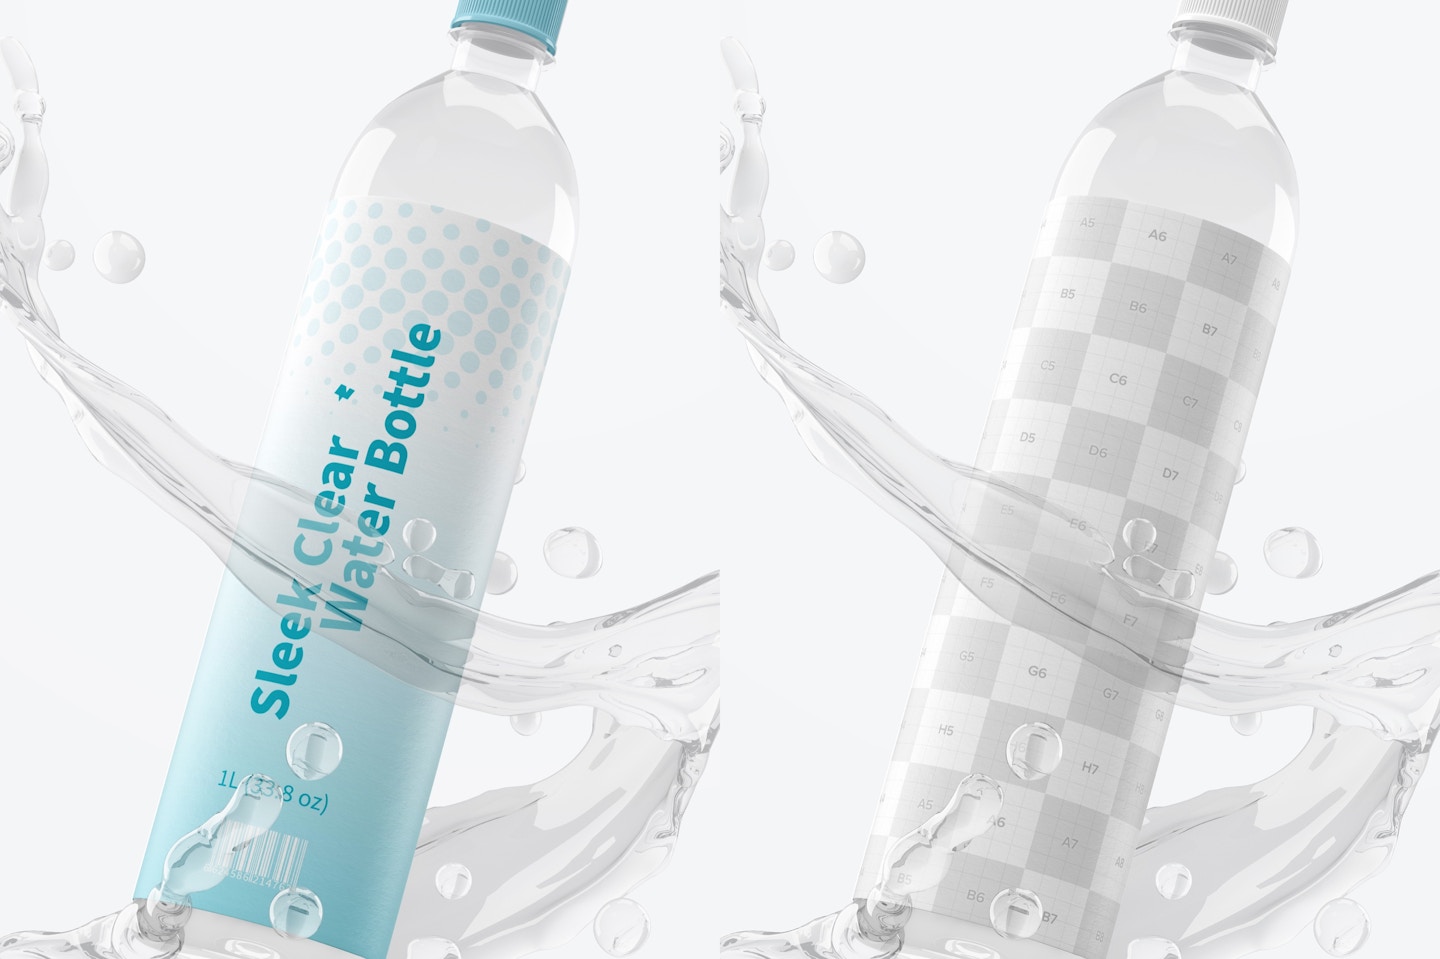 1L Sleek Clear Water Bottle Scene Mockup